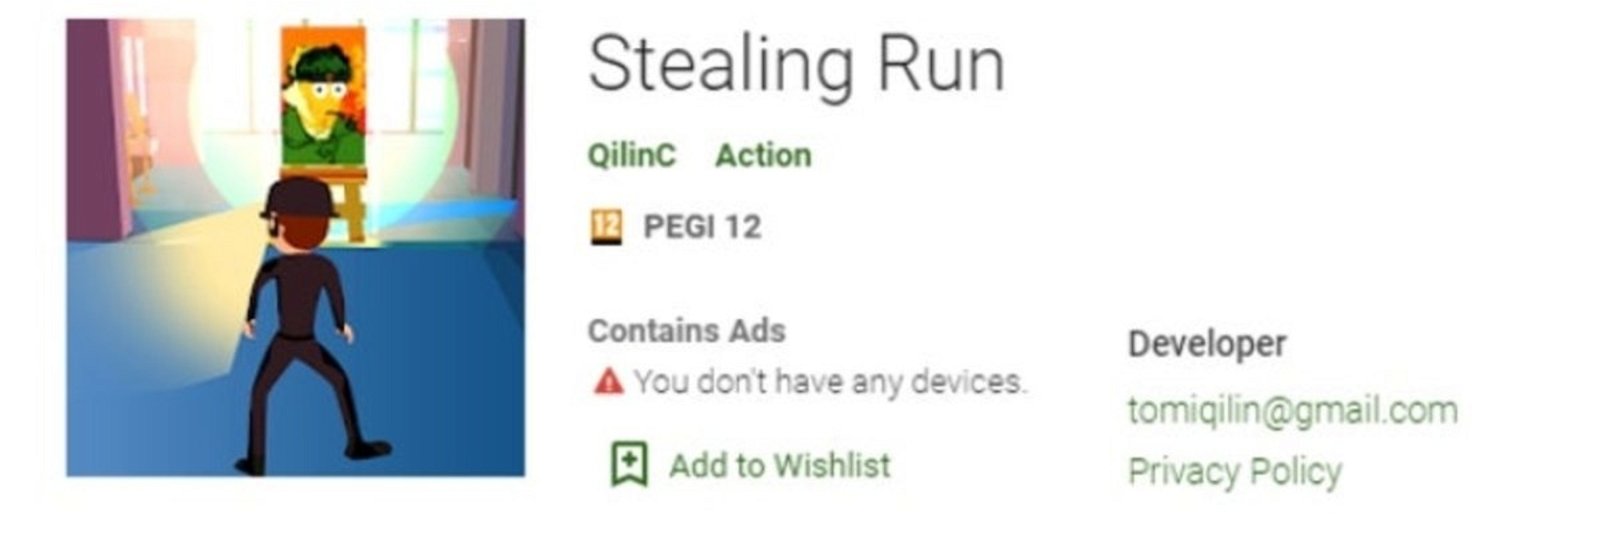 Stealing Run